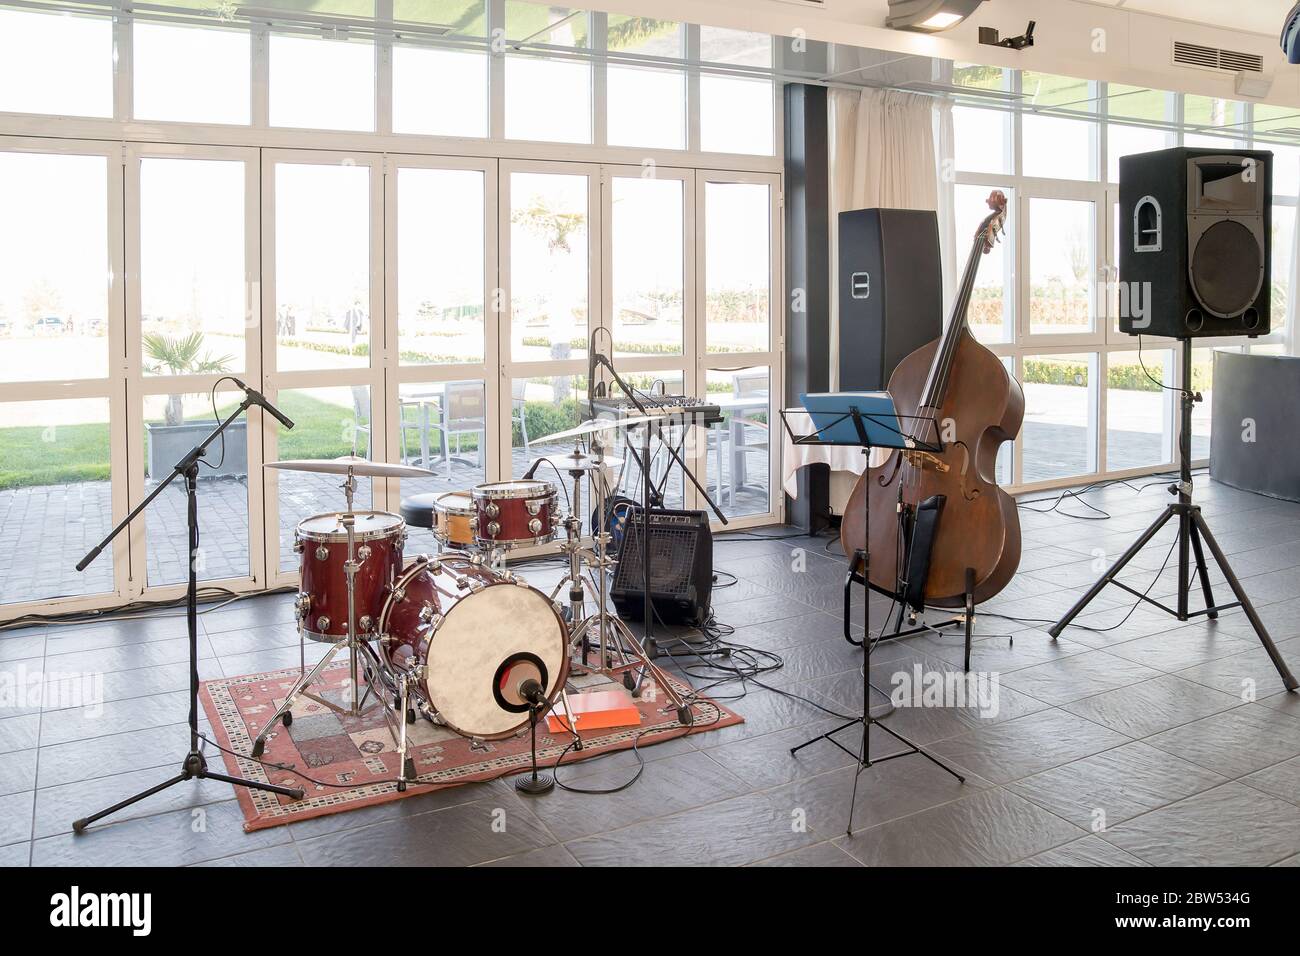 Instruments de musique, double basse à côté d'une batterie, haut-parleurs et microphones dans une pièce par beau temps. Banque D'Images